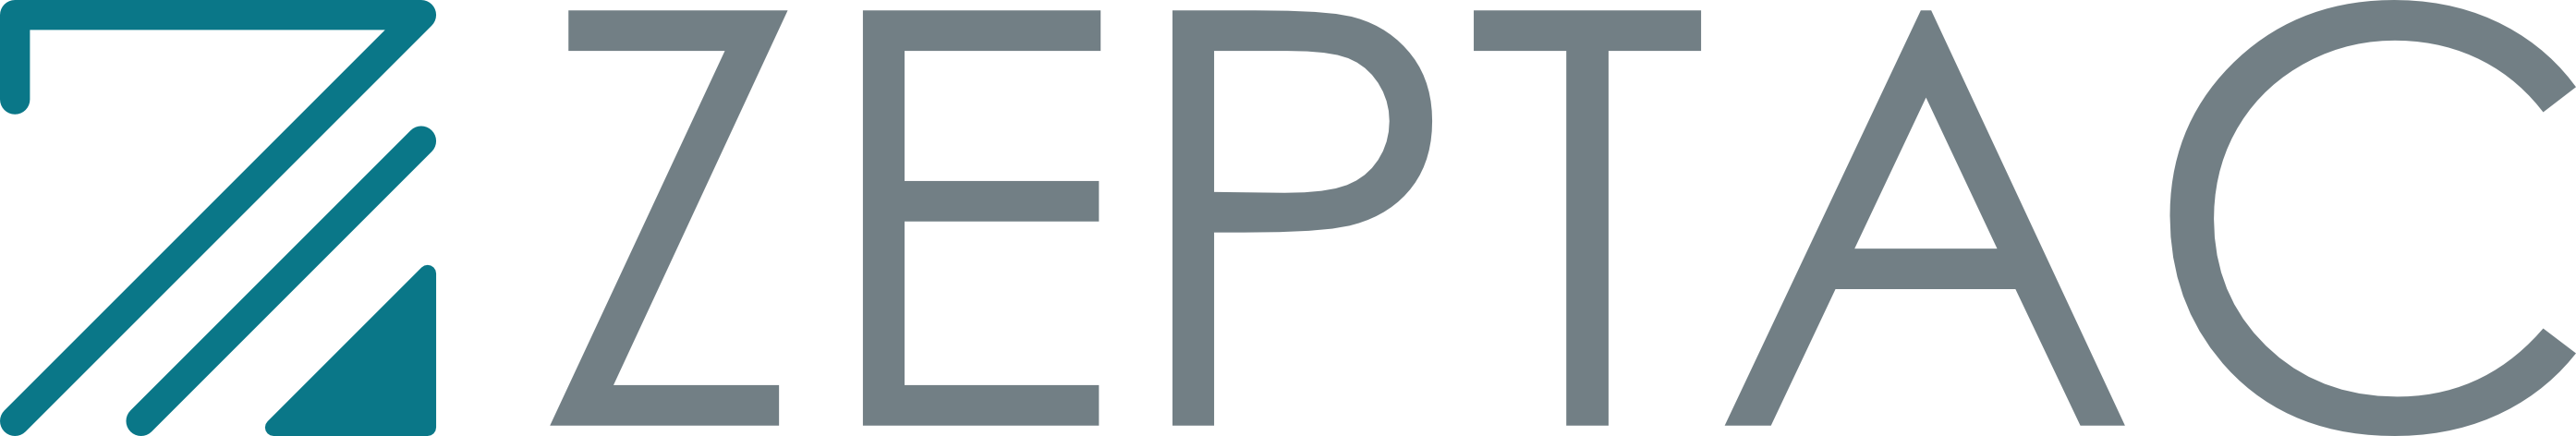 Zeptac logo footer